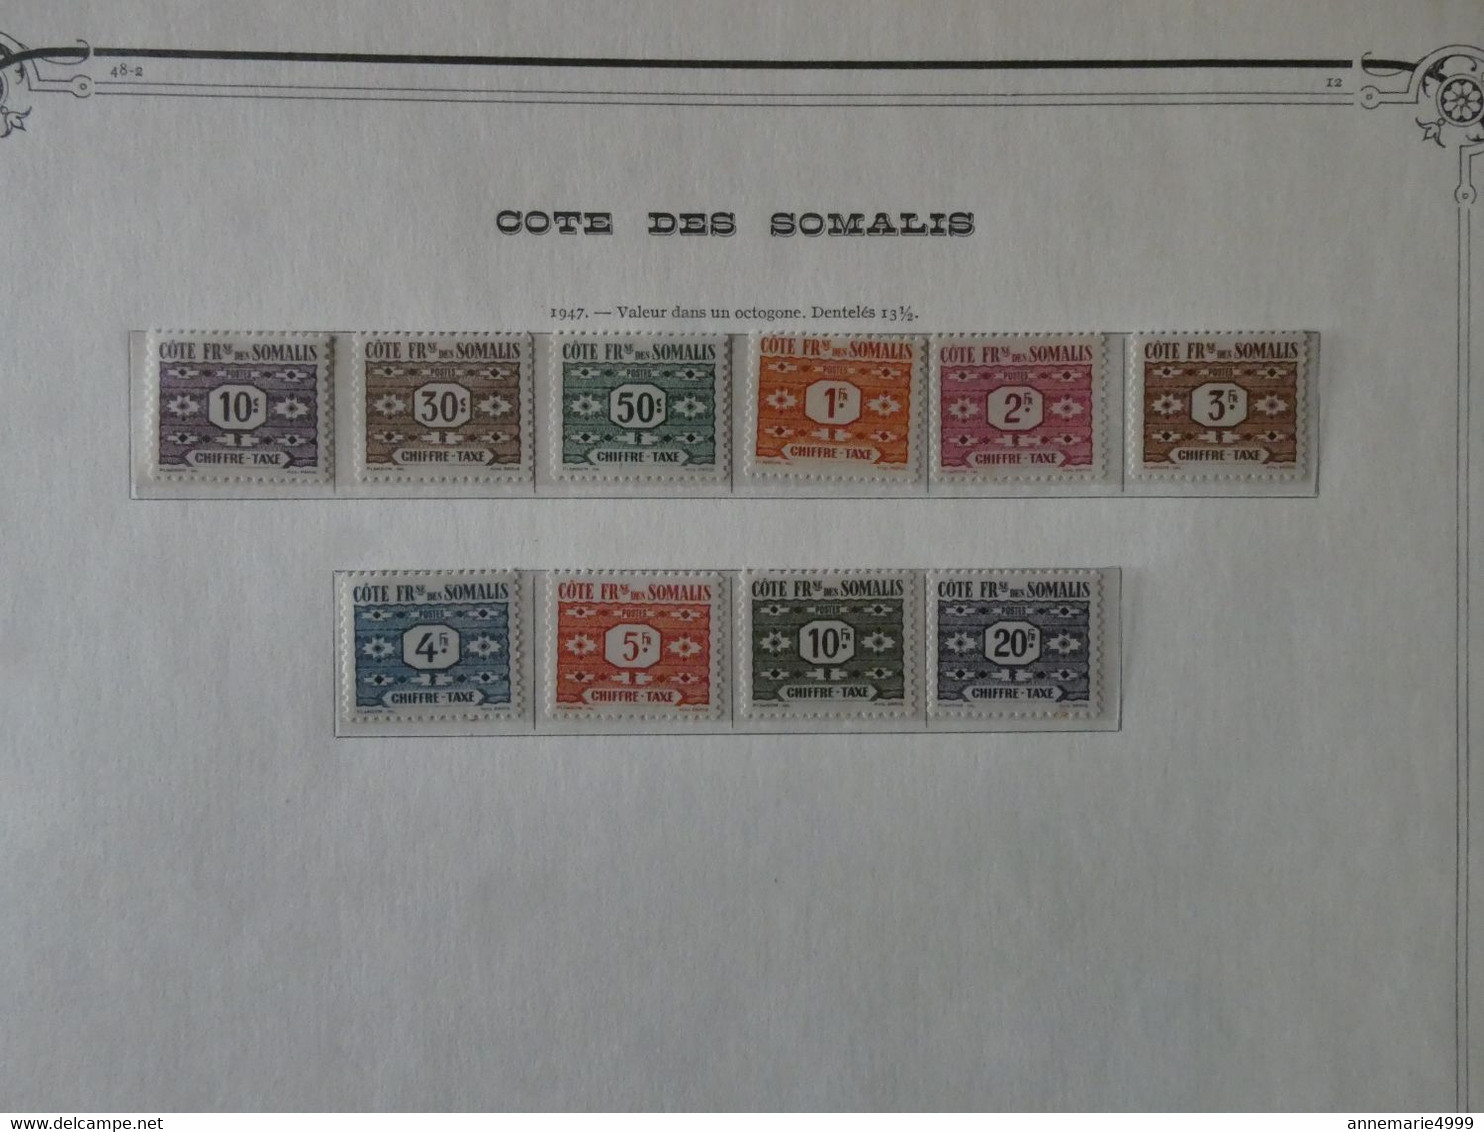 FRANCE Colonies COTE DES SOMALIES Collection Bien avancée  Cote 1050 € Tout est scanné